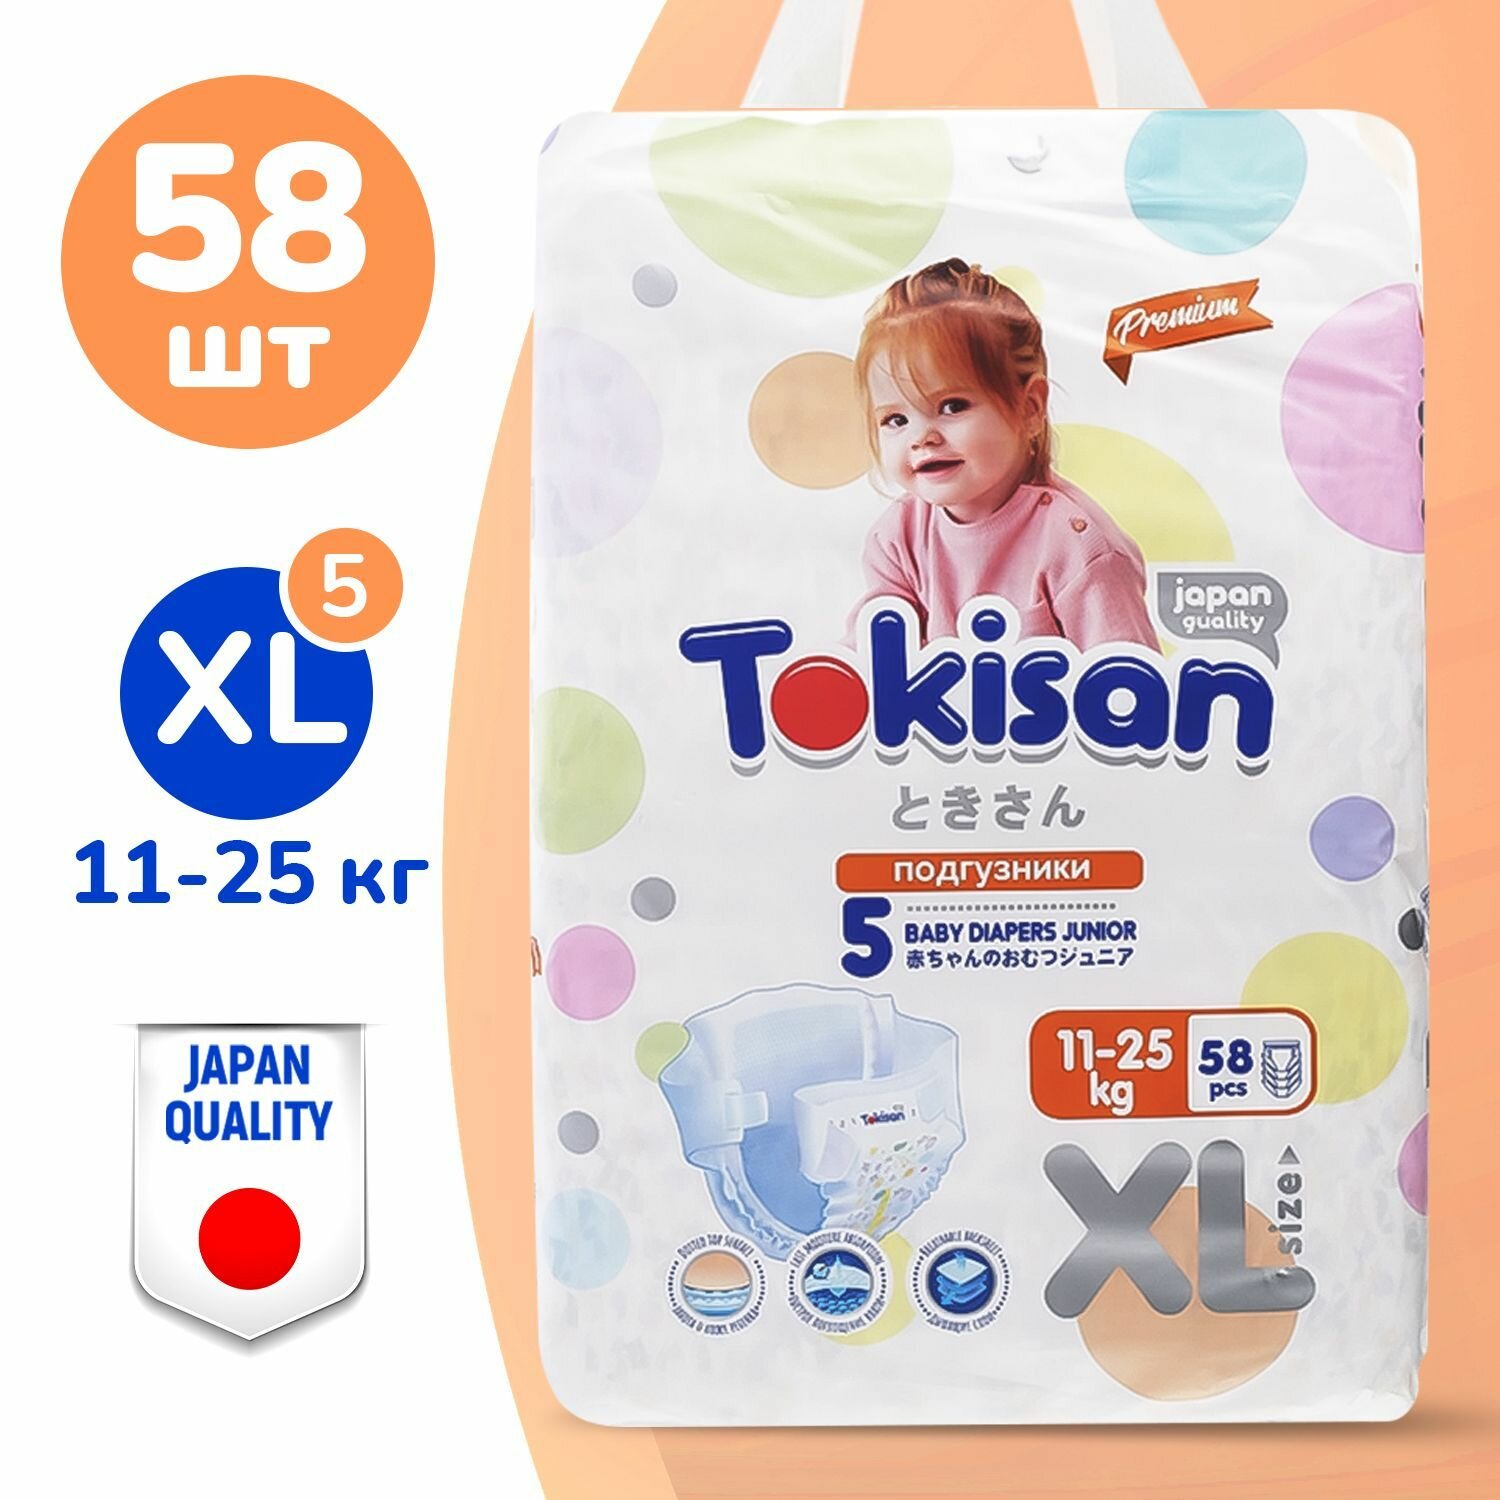 TOKISAN Подгузники детские, 5 размер (11-25 кг) XL, 58 шт